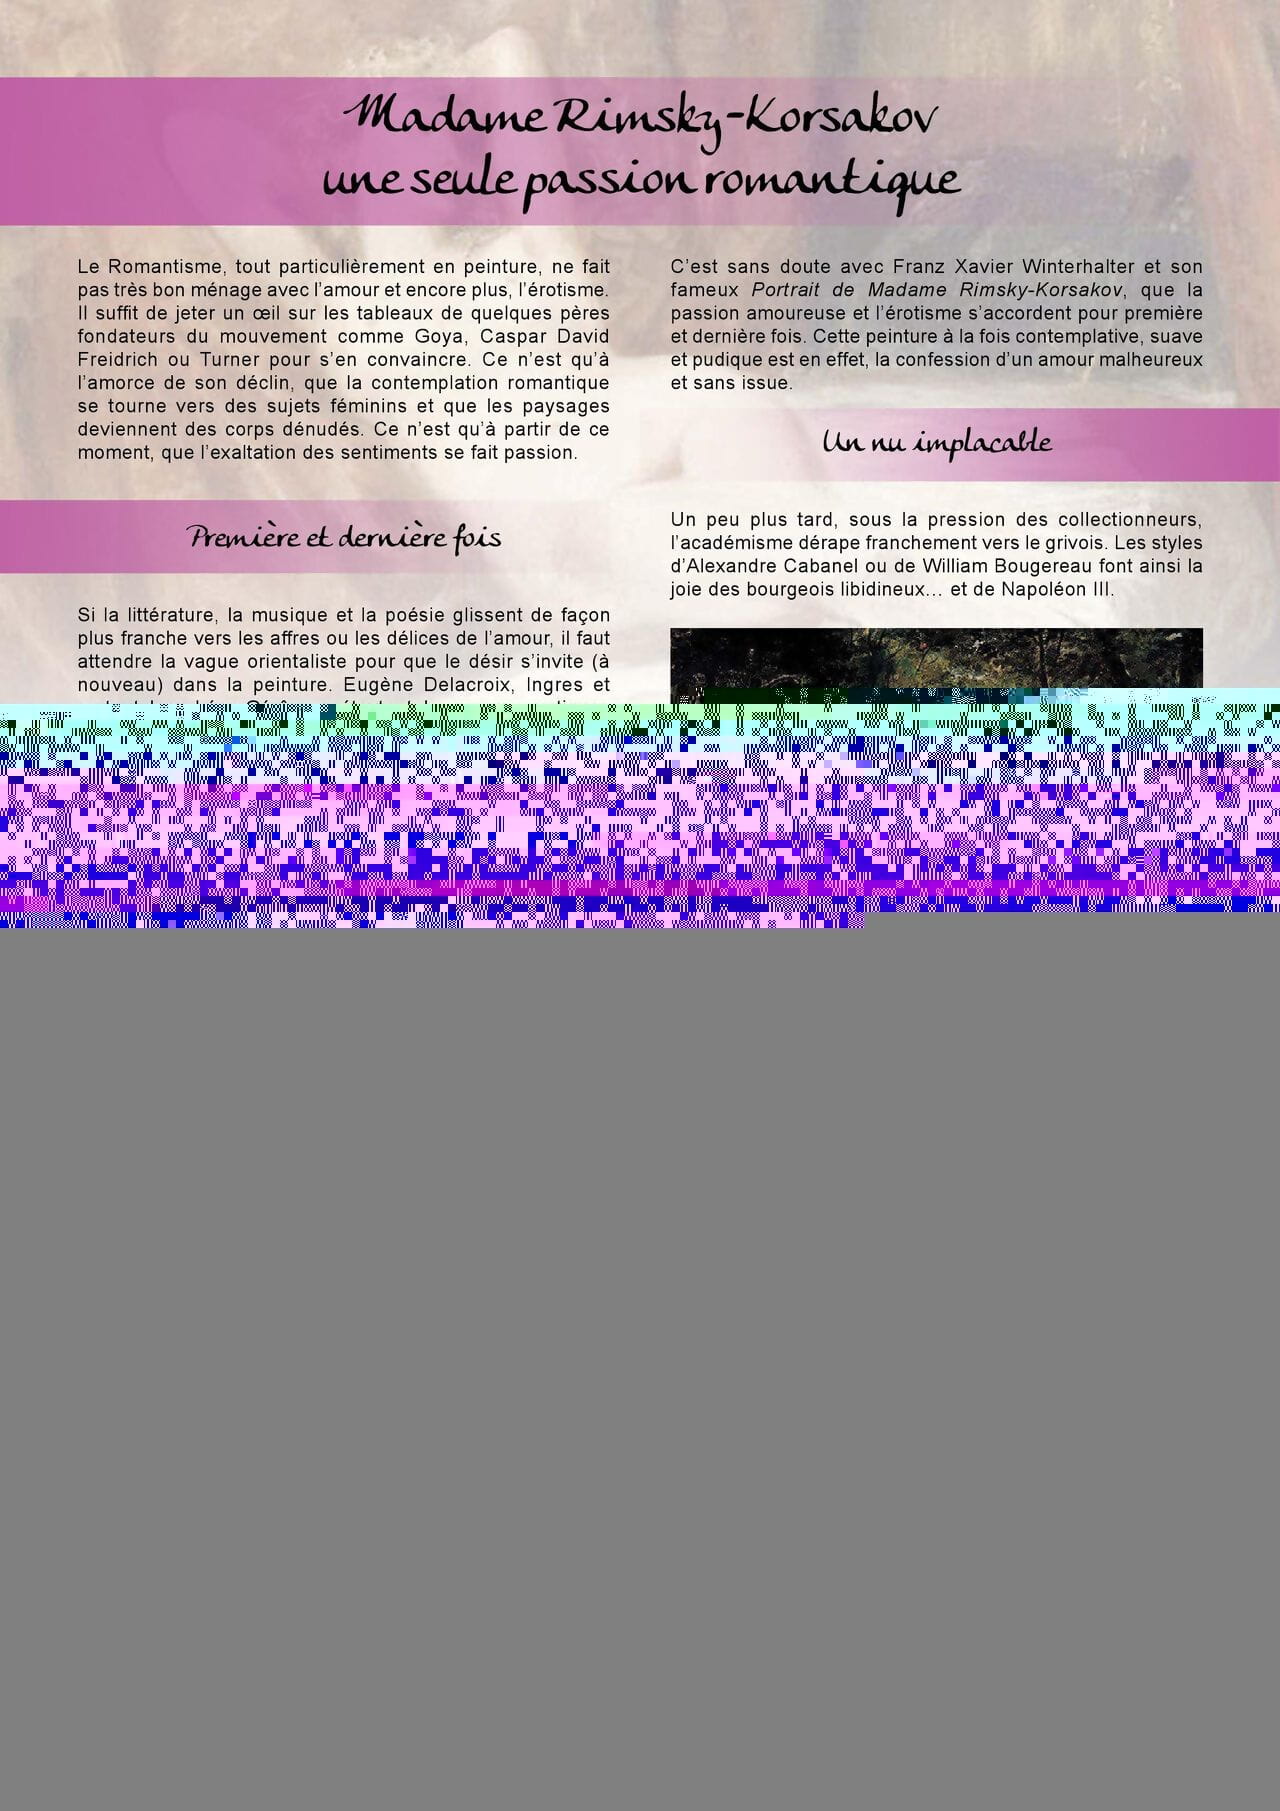 Blandice - 02 - Le romantisme dans la bd - part 3 page 1